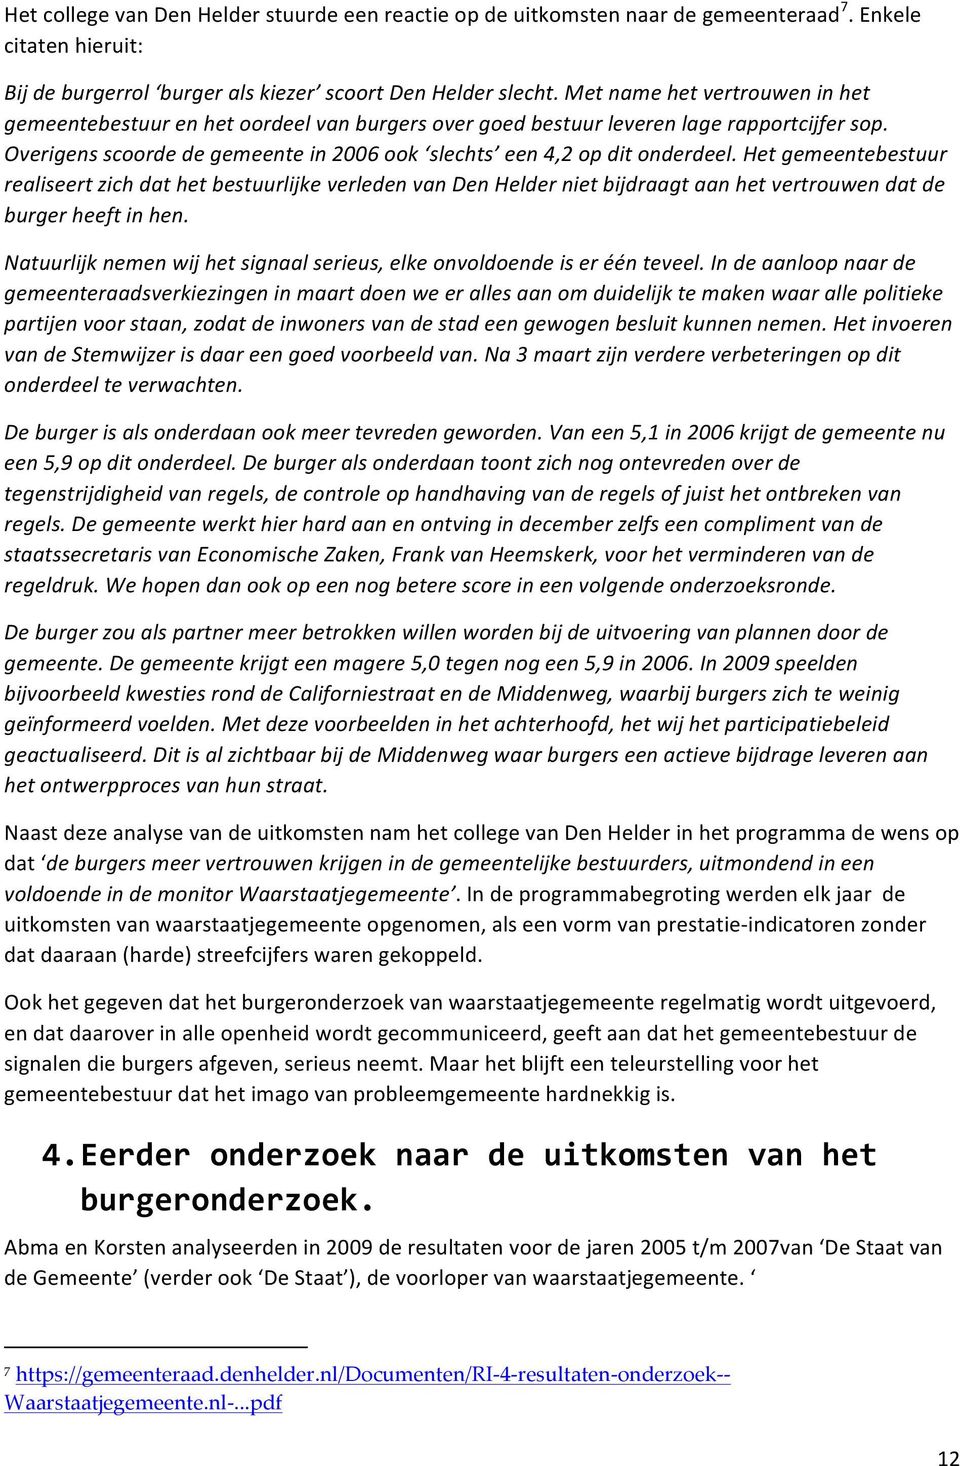 Het gemeentebestuur realiseert zich dat het bestuurlijke verleden van Den Helder niet bijdraagt aan het vertrouwen dat de burger heeft in hen.